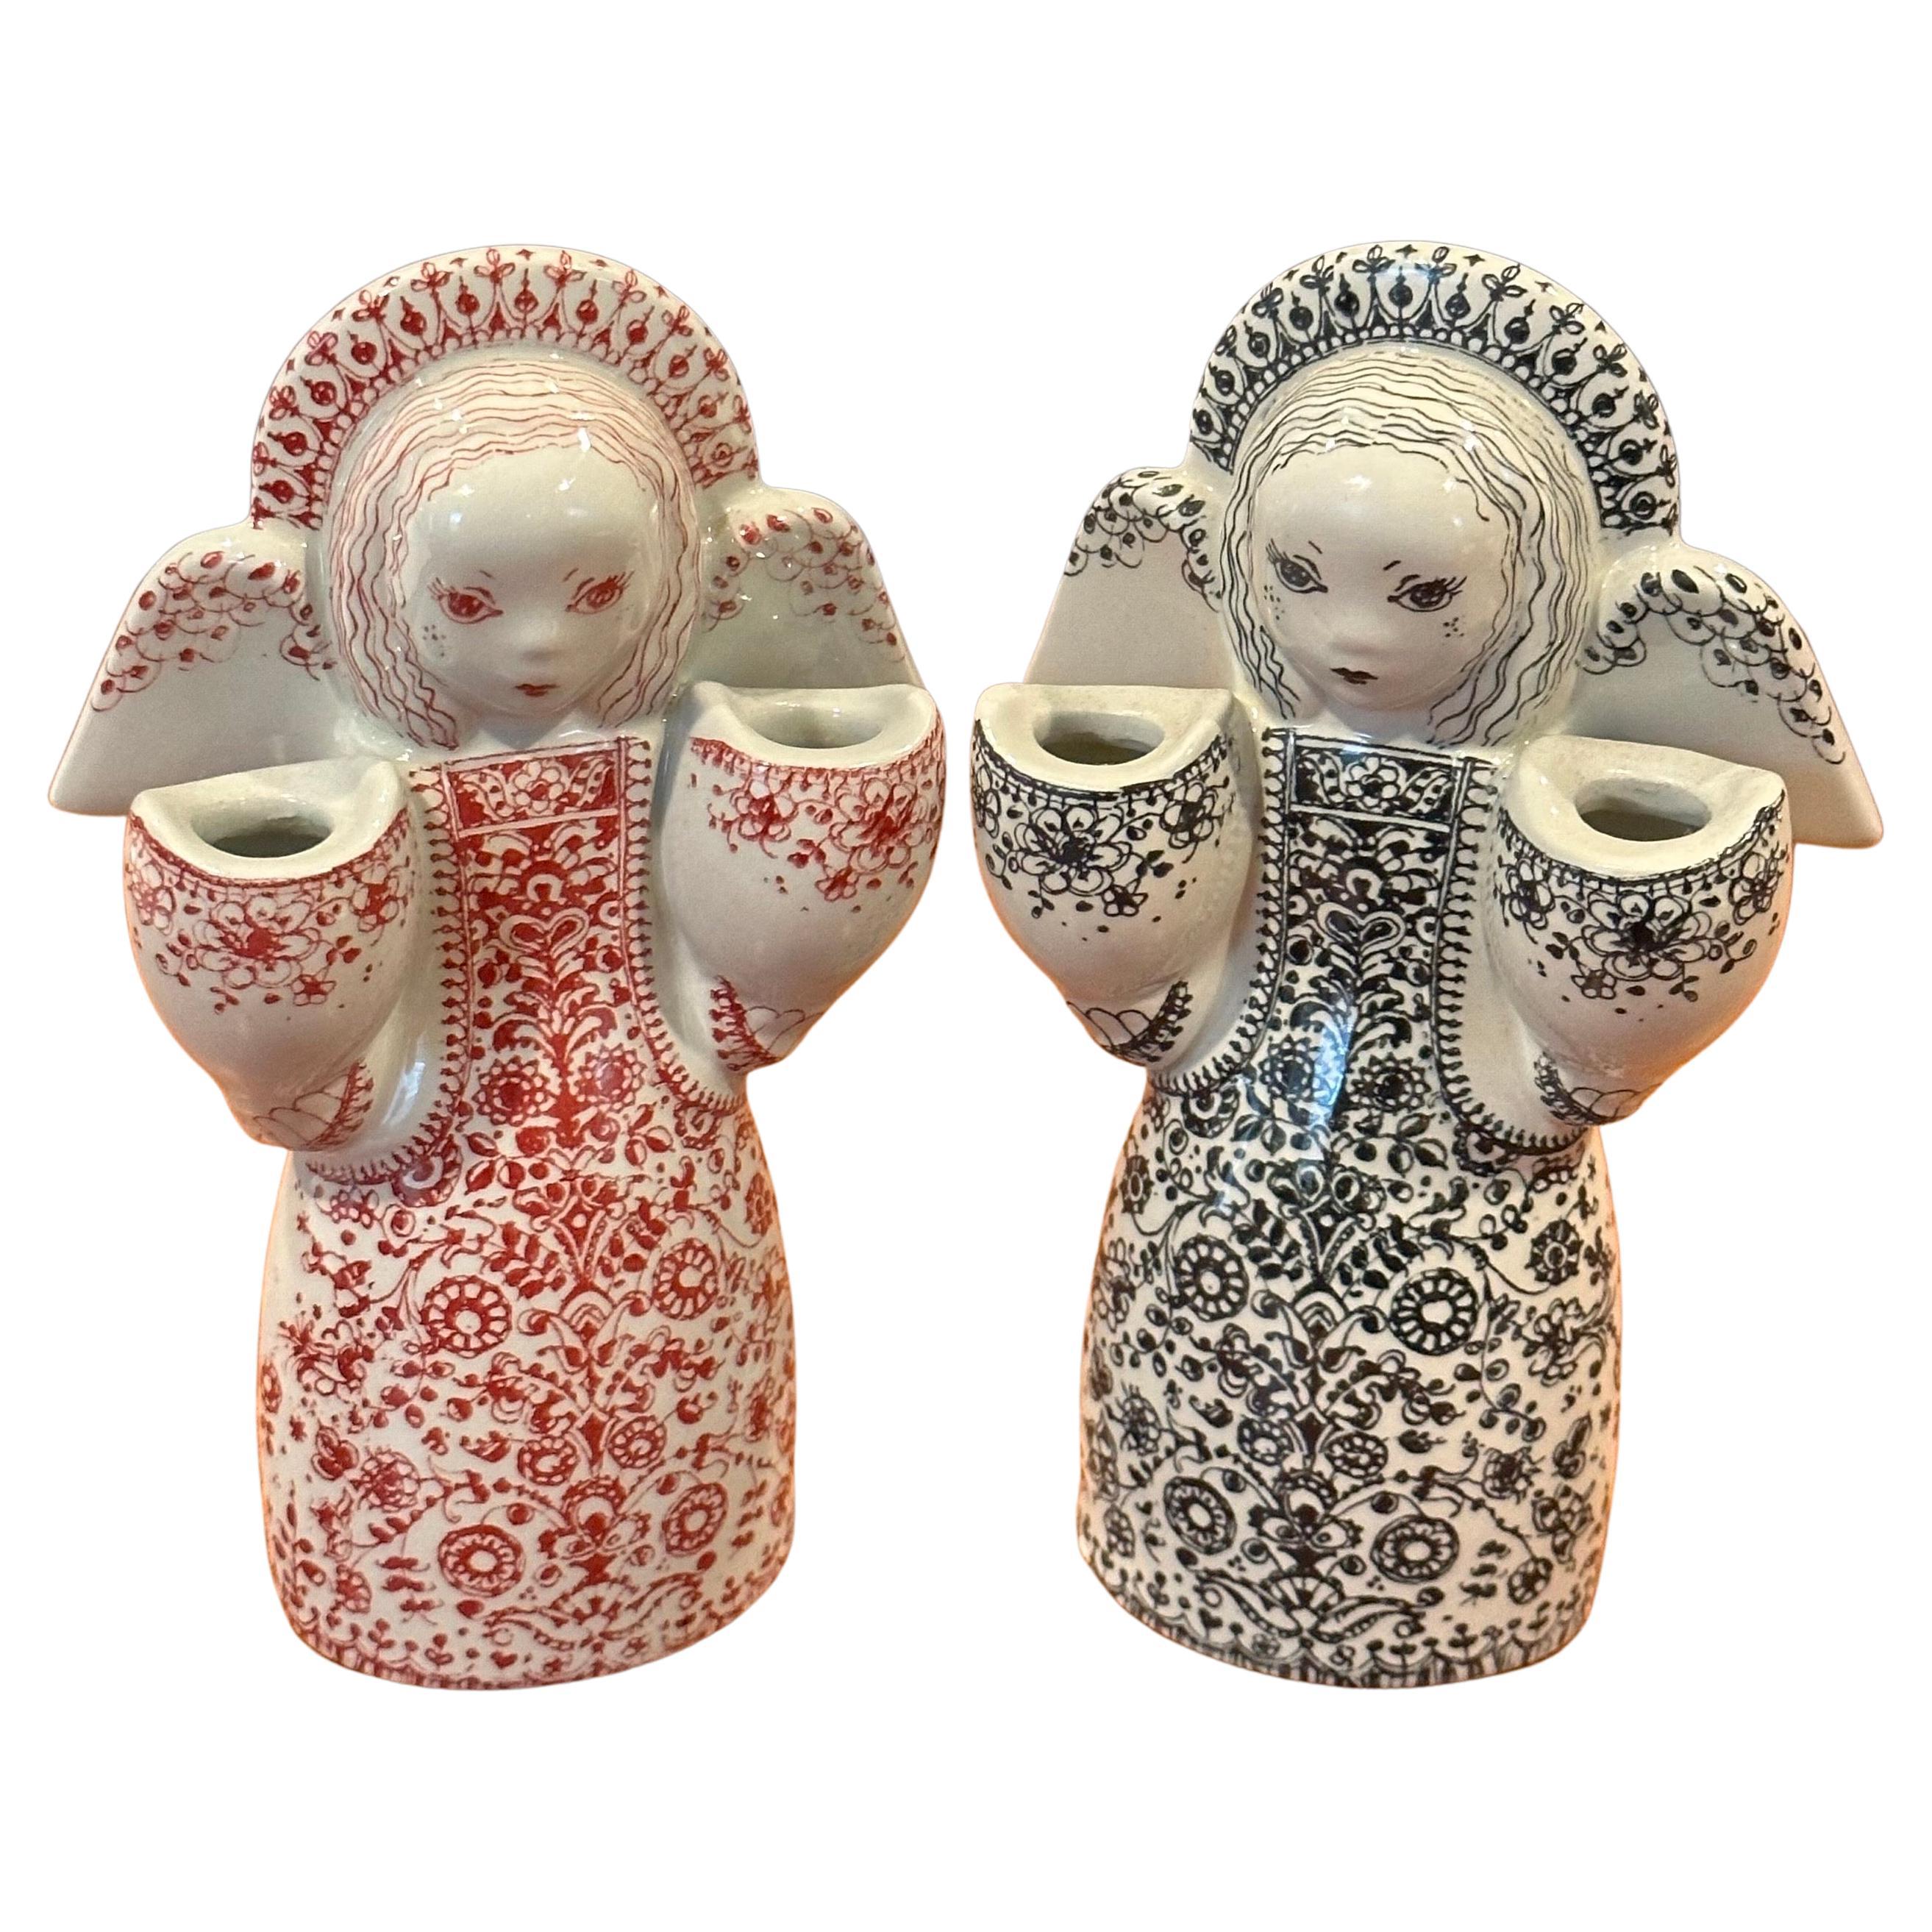 Ein sehr cooles und schwer zu finden Paar Porzellan figurative Dual Kerzenhalter von Nymolle von Denamark, ca. 1960er Jahre.  #3186

Das Paar ist in sehr gutem Vintage-Zustand ohne Chips, Risse oder Sprünge und misst 3,5 